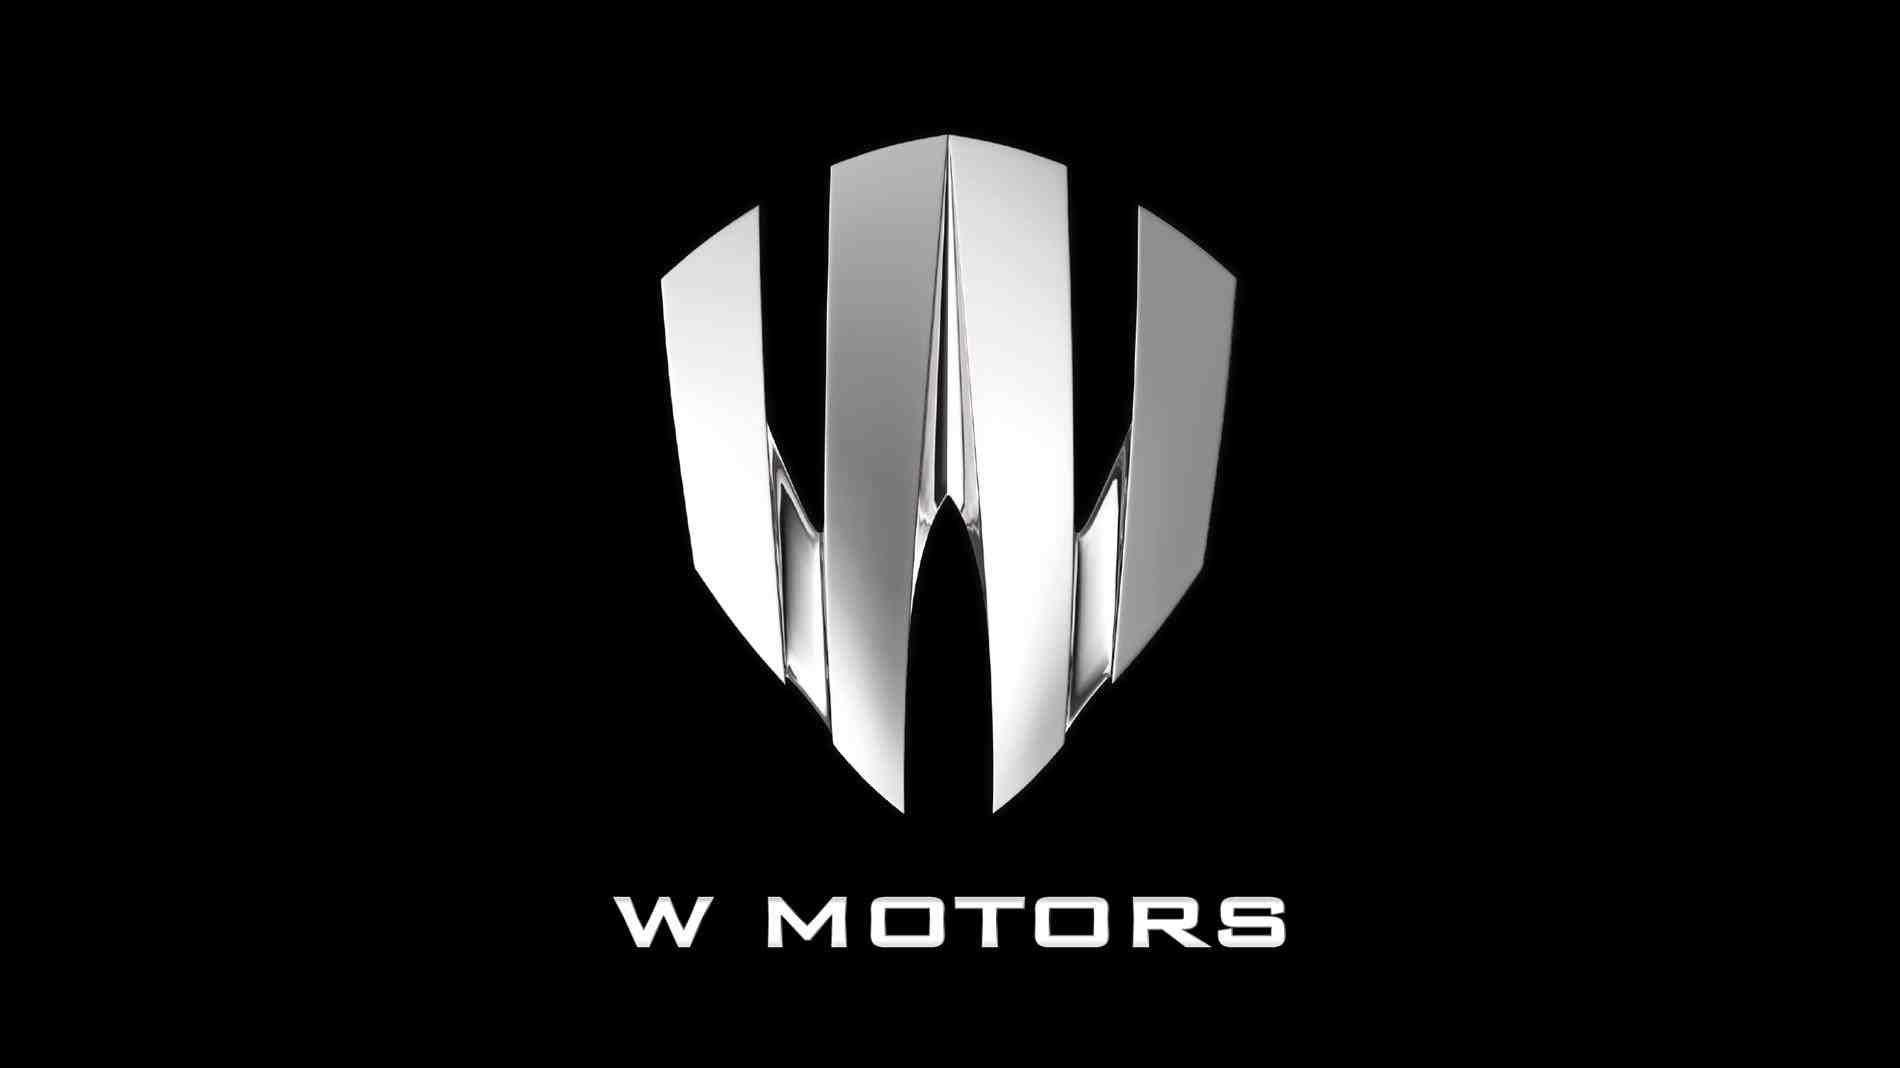 W Motors Logo - W Motors Logo Wallpaper